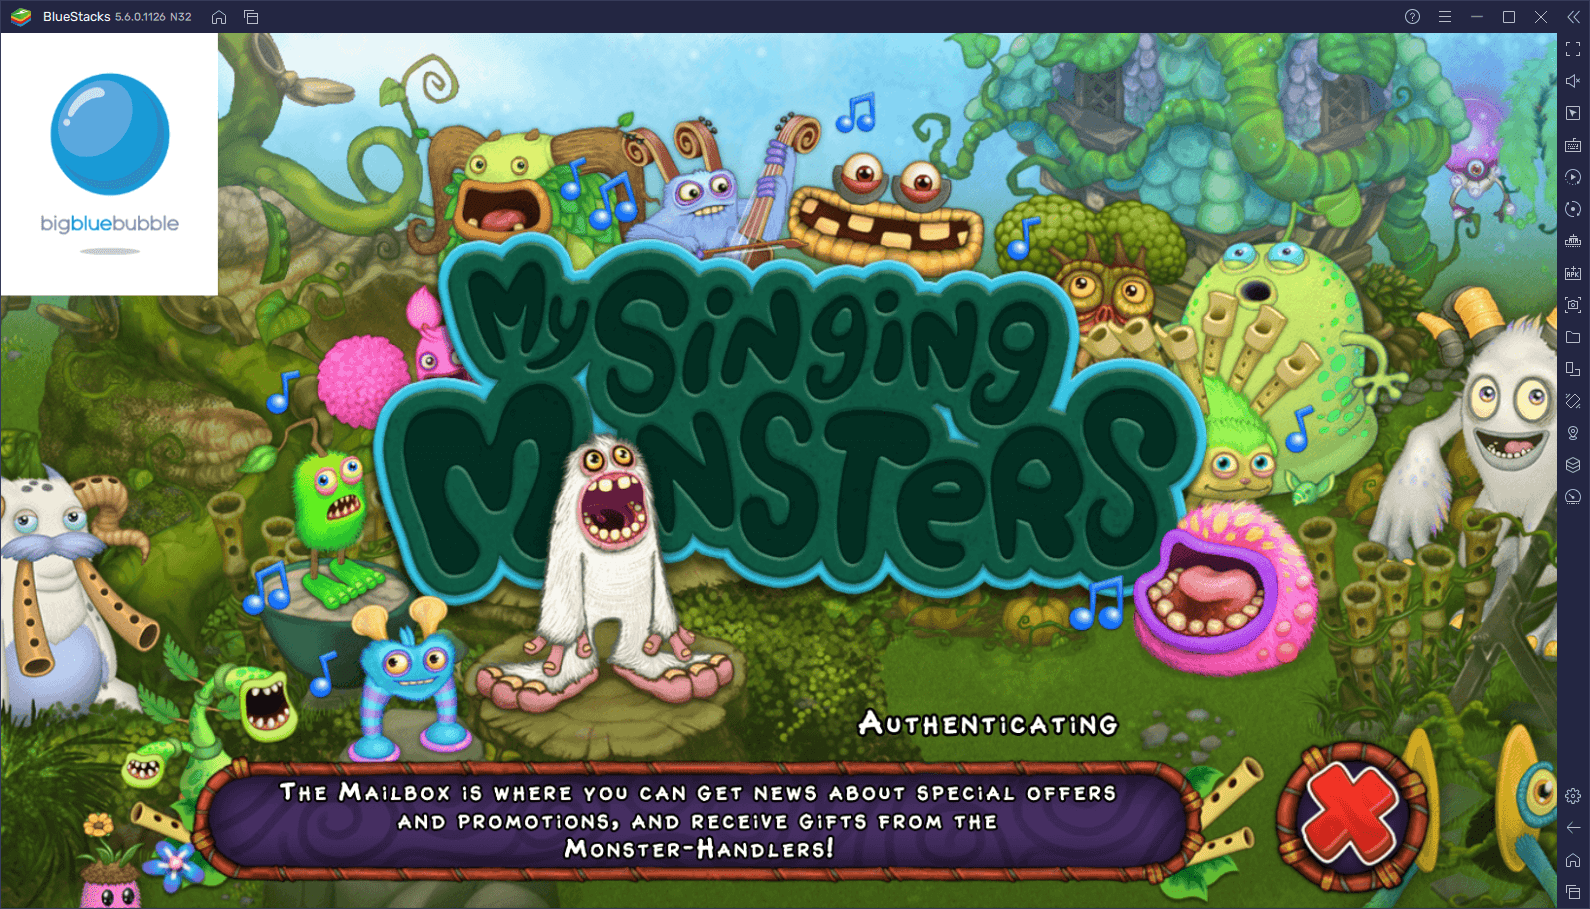 دليل المبتدئين للعبة My Singing Monsters حول كيفية الحصول على الوحوش وتكاثرها وتنمية جزرك